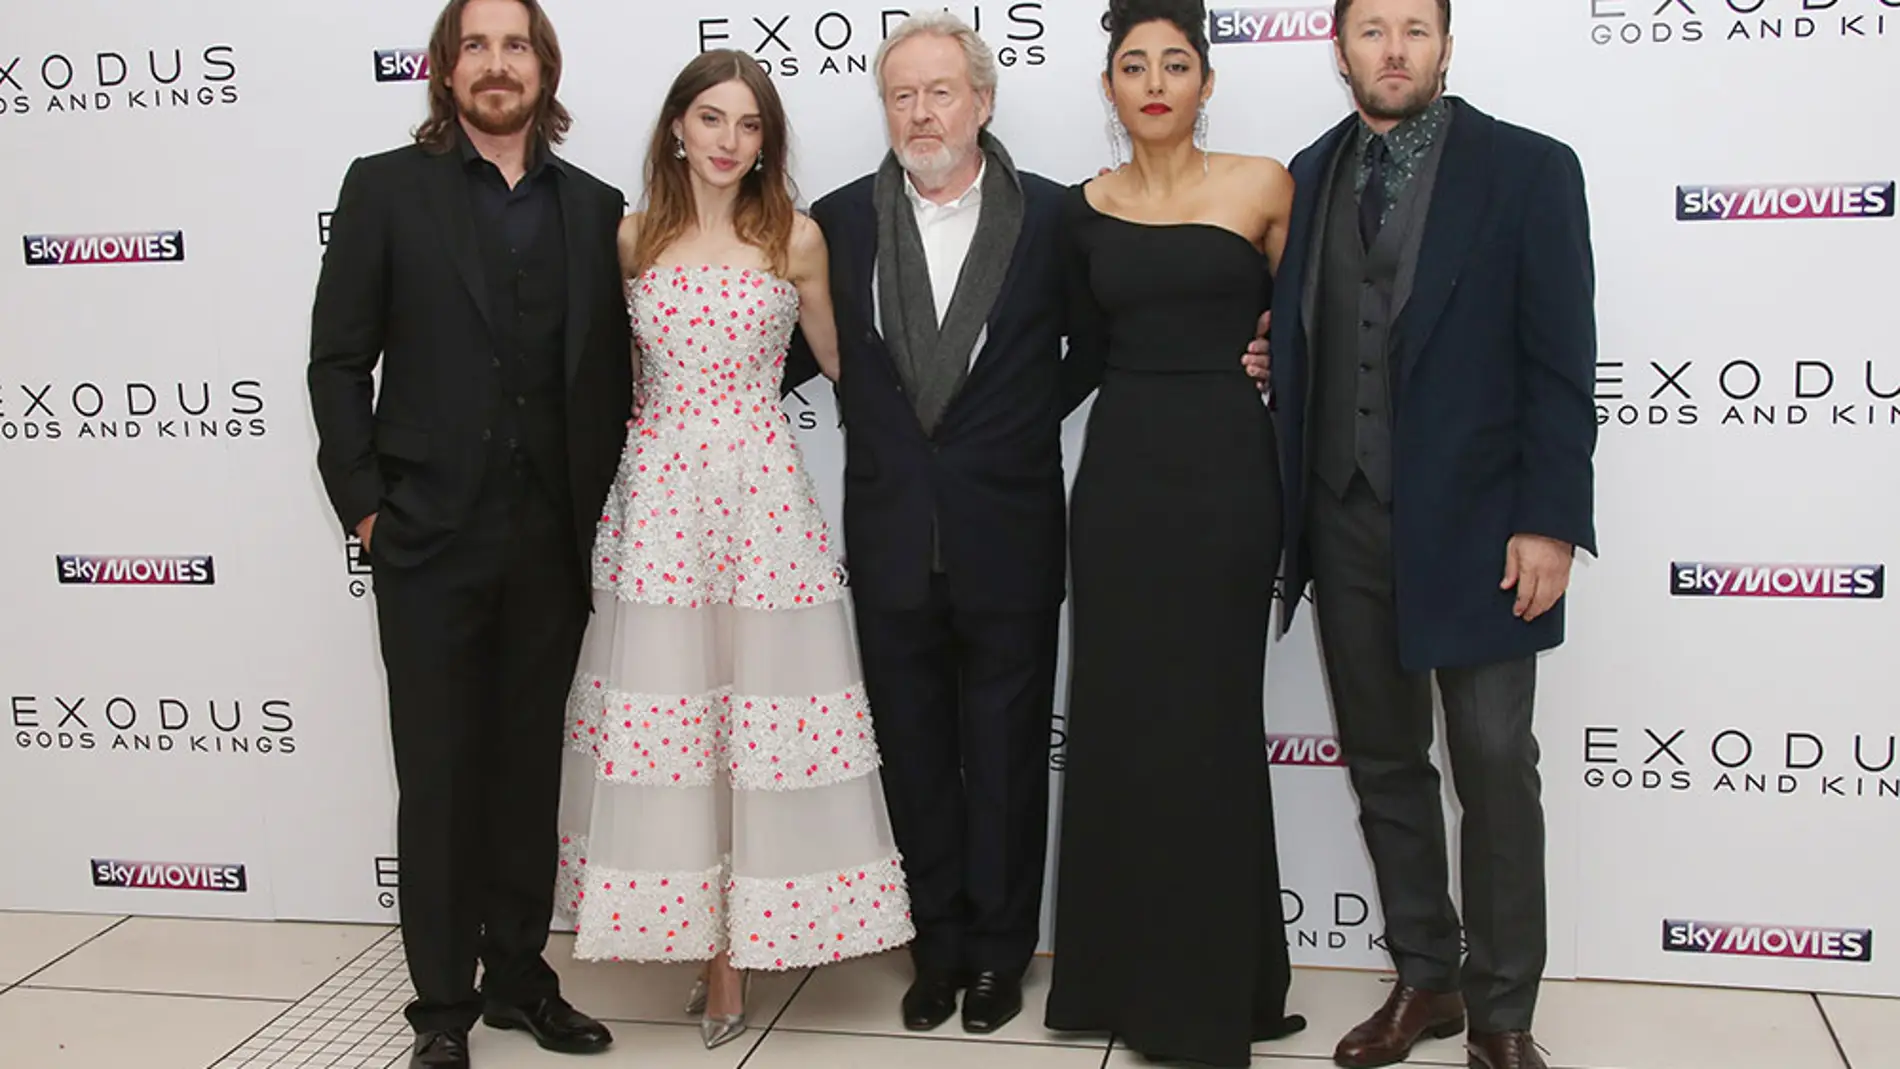 María Valverde y Christian Bale en la premiere de 'Exodus' en Londres 